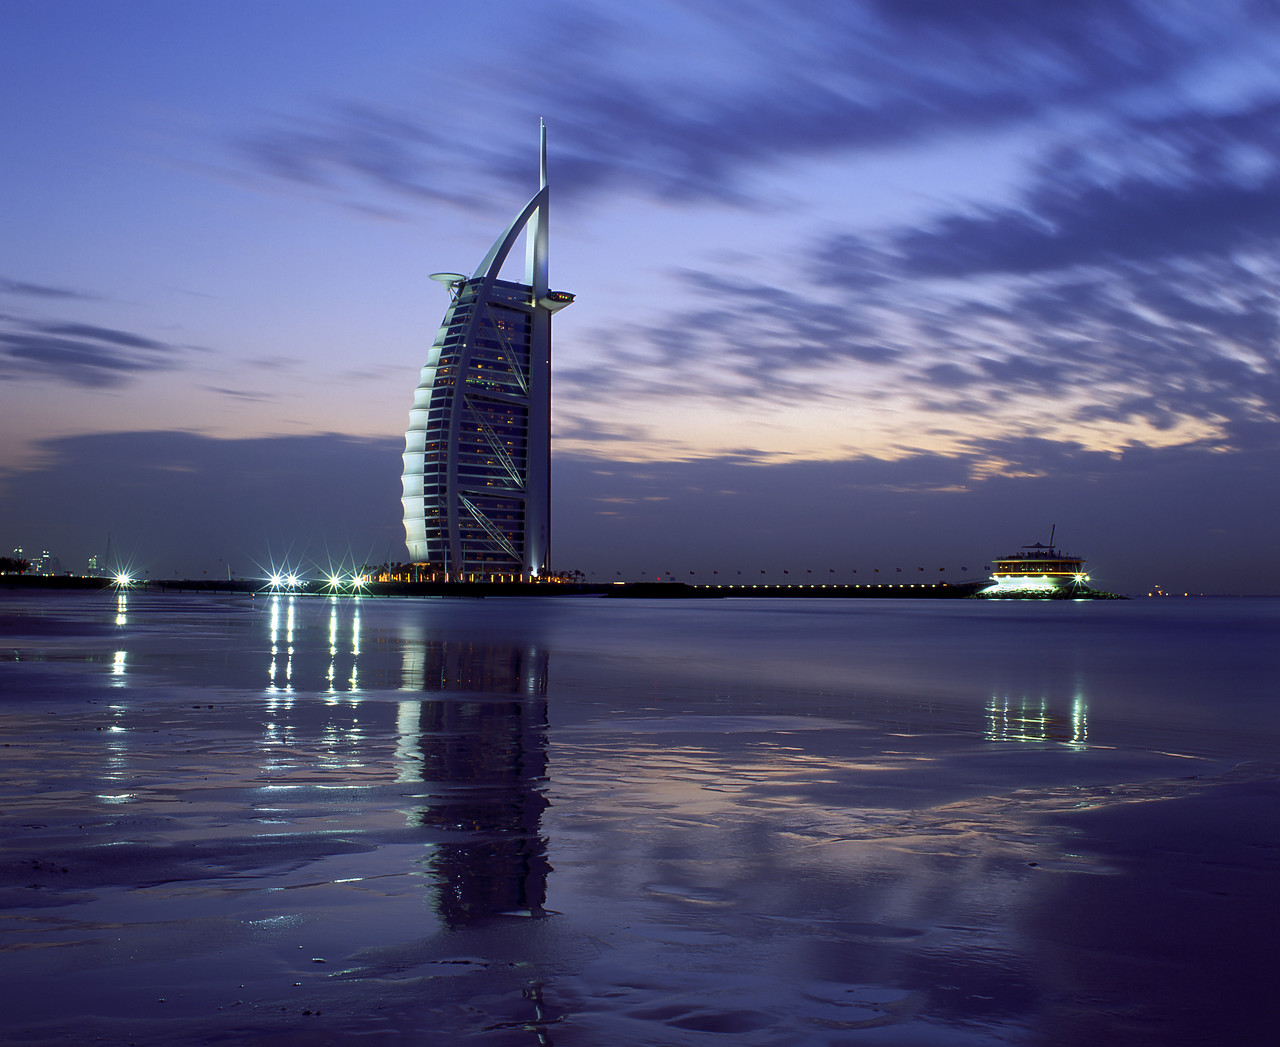 #050050-1 - Burj Al Arab Reflecting in Beach, Dubai, UAE